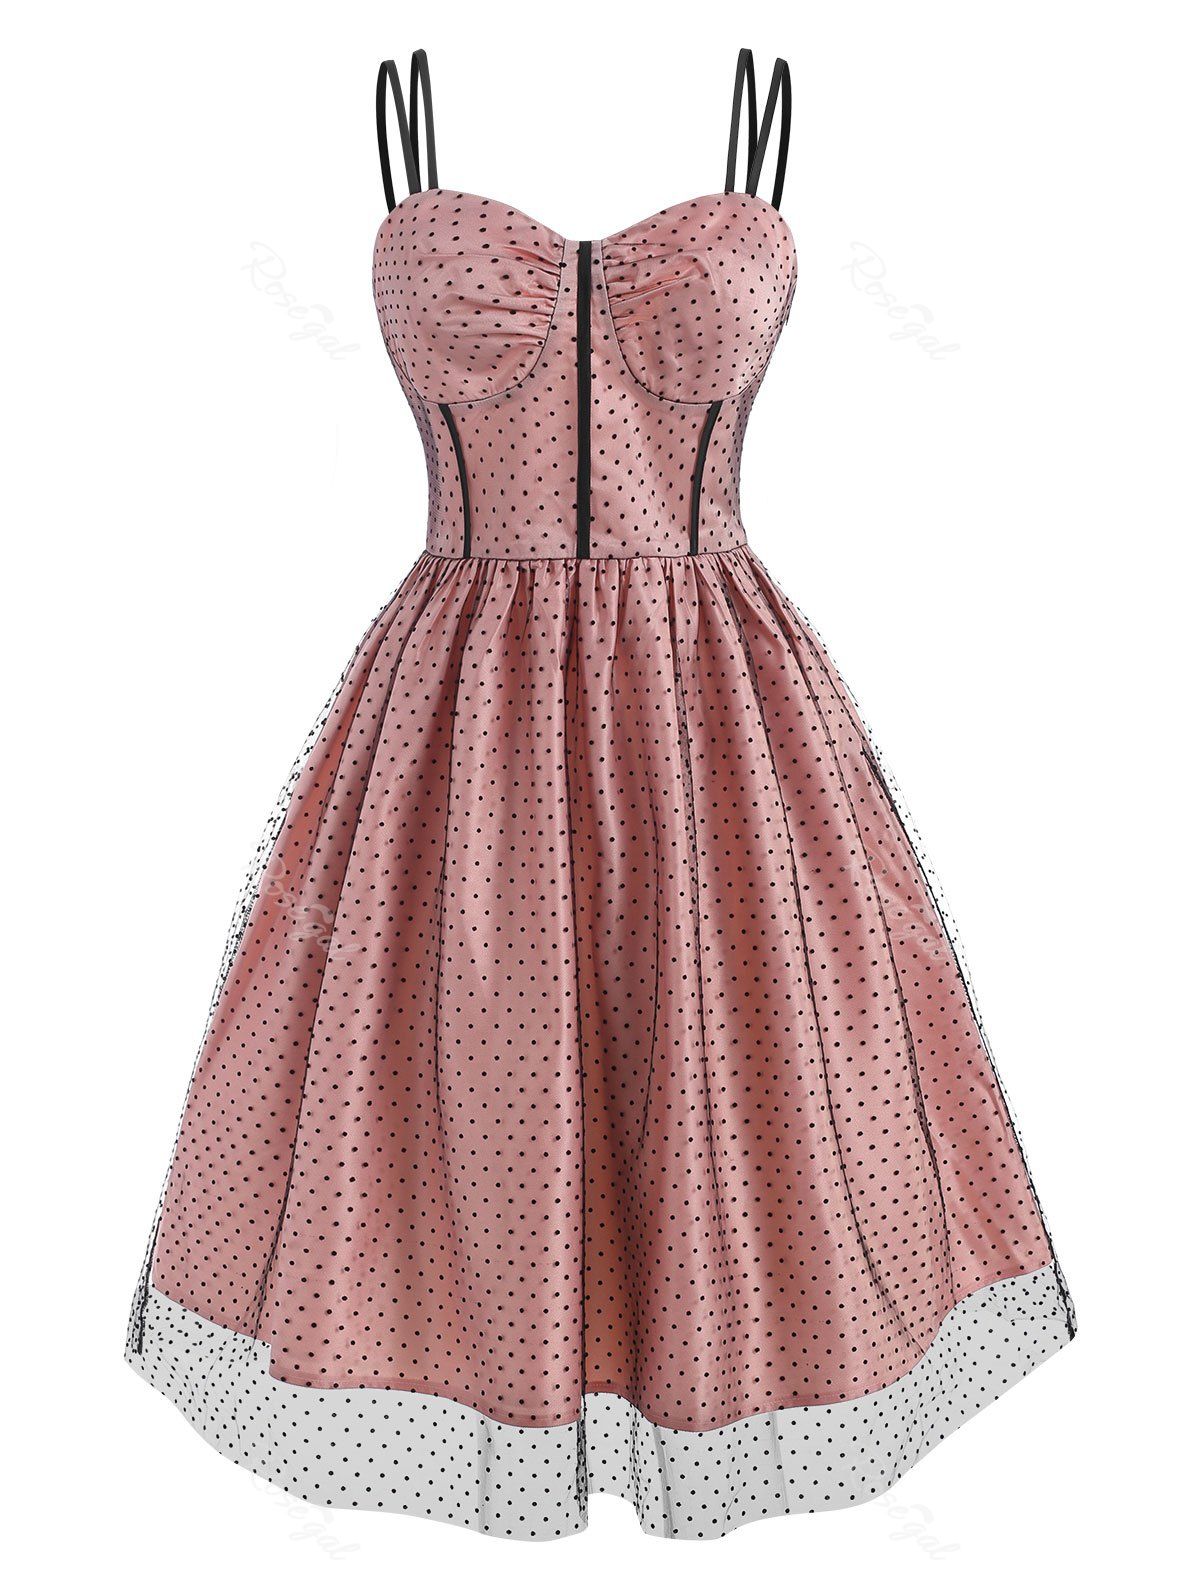 Buy Mesh Overlay Polka Dot Corset Style Dress  